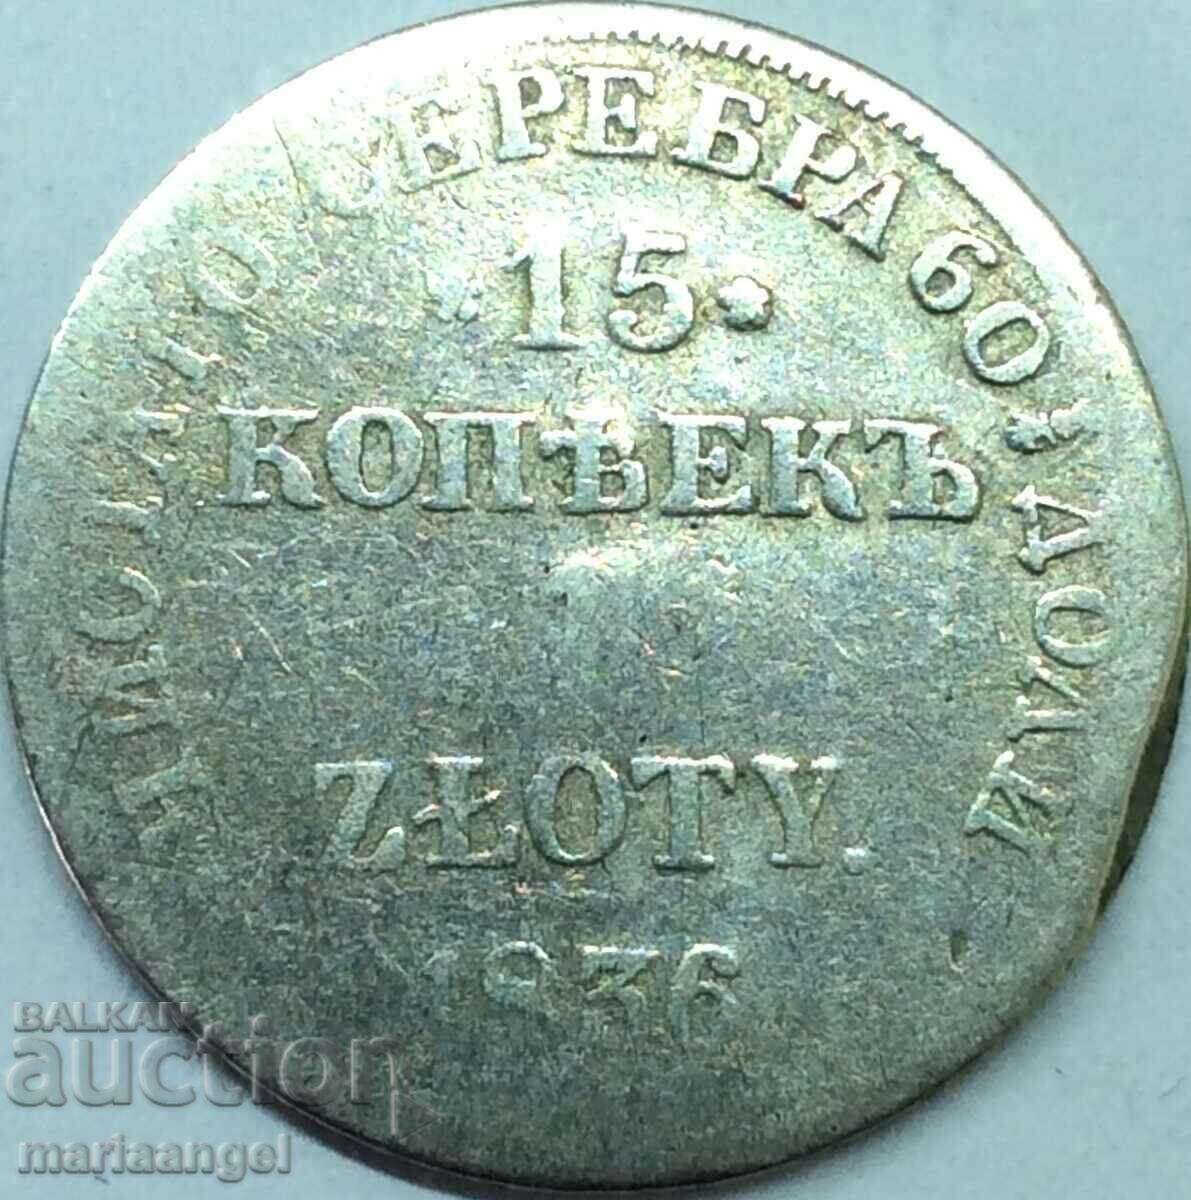 15 kopecks 1 zloty 1836 Poland Nicholas I (1825-55) Russian Tsar